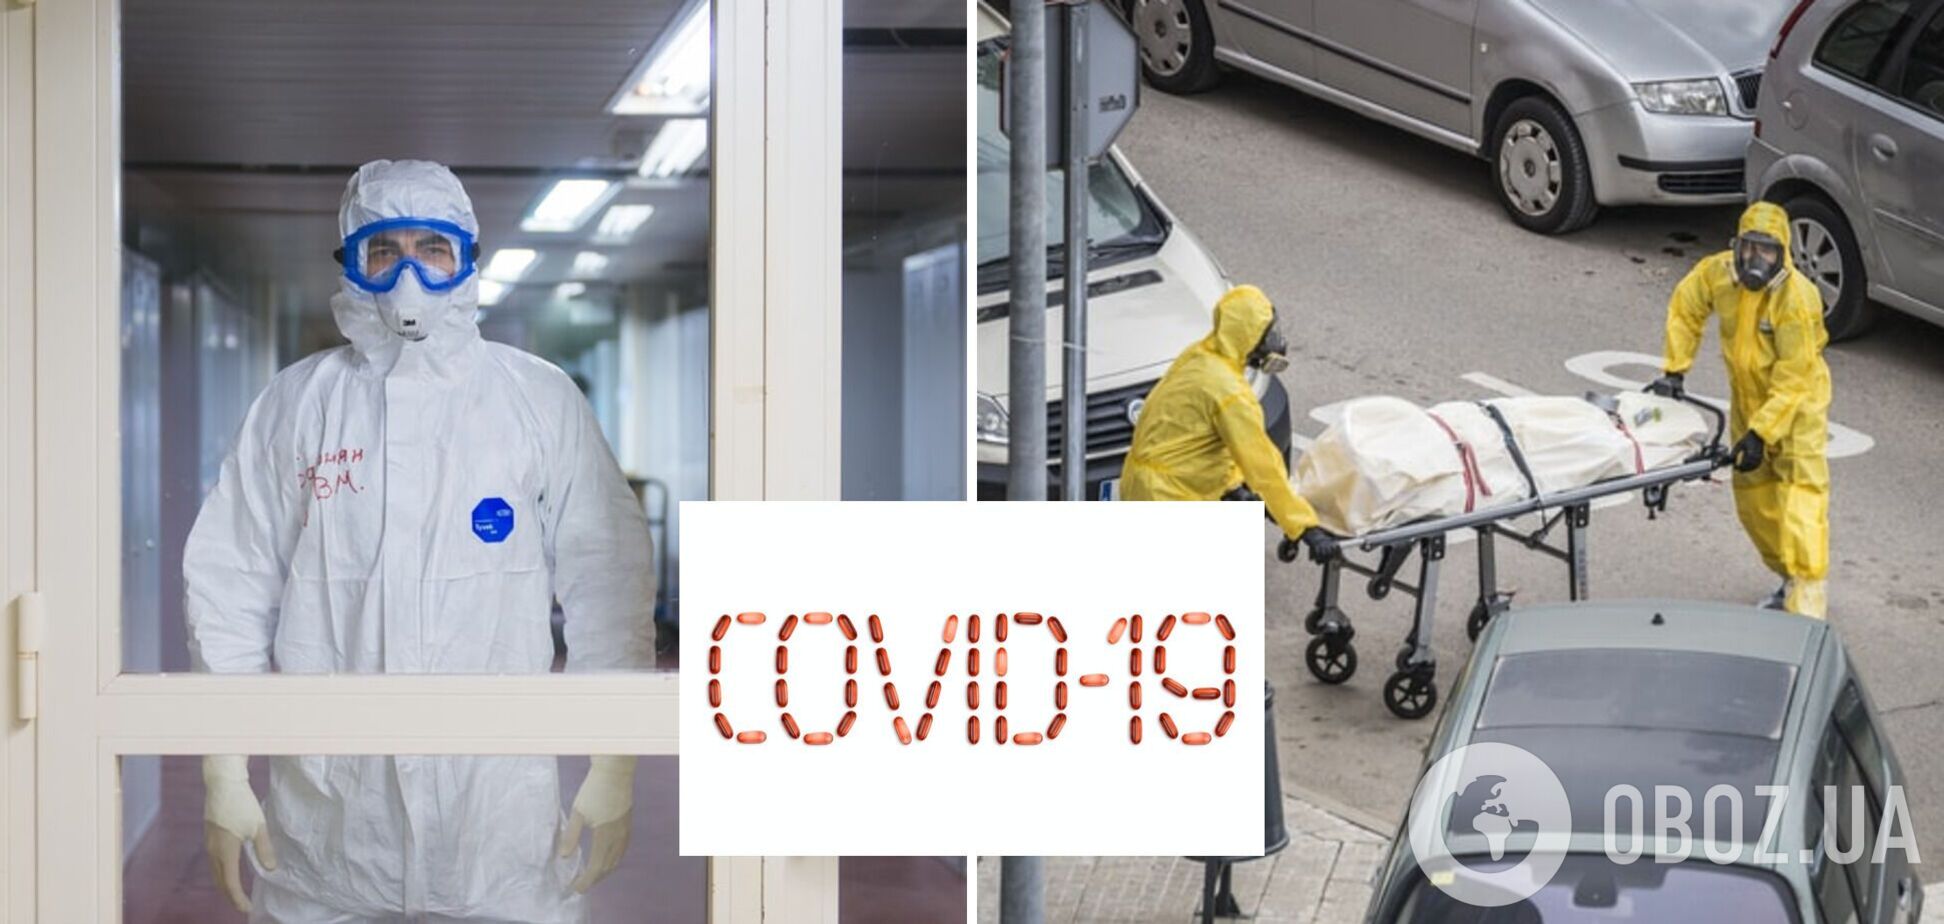 Врач о всплеске COVID-19 в Украине: эта волна очень страшна для нас, вирус мутирует